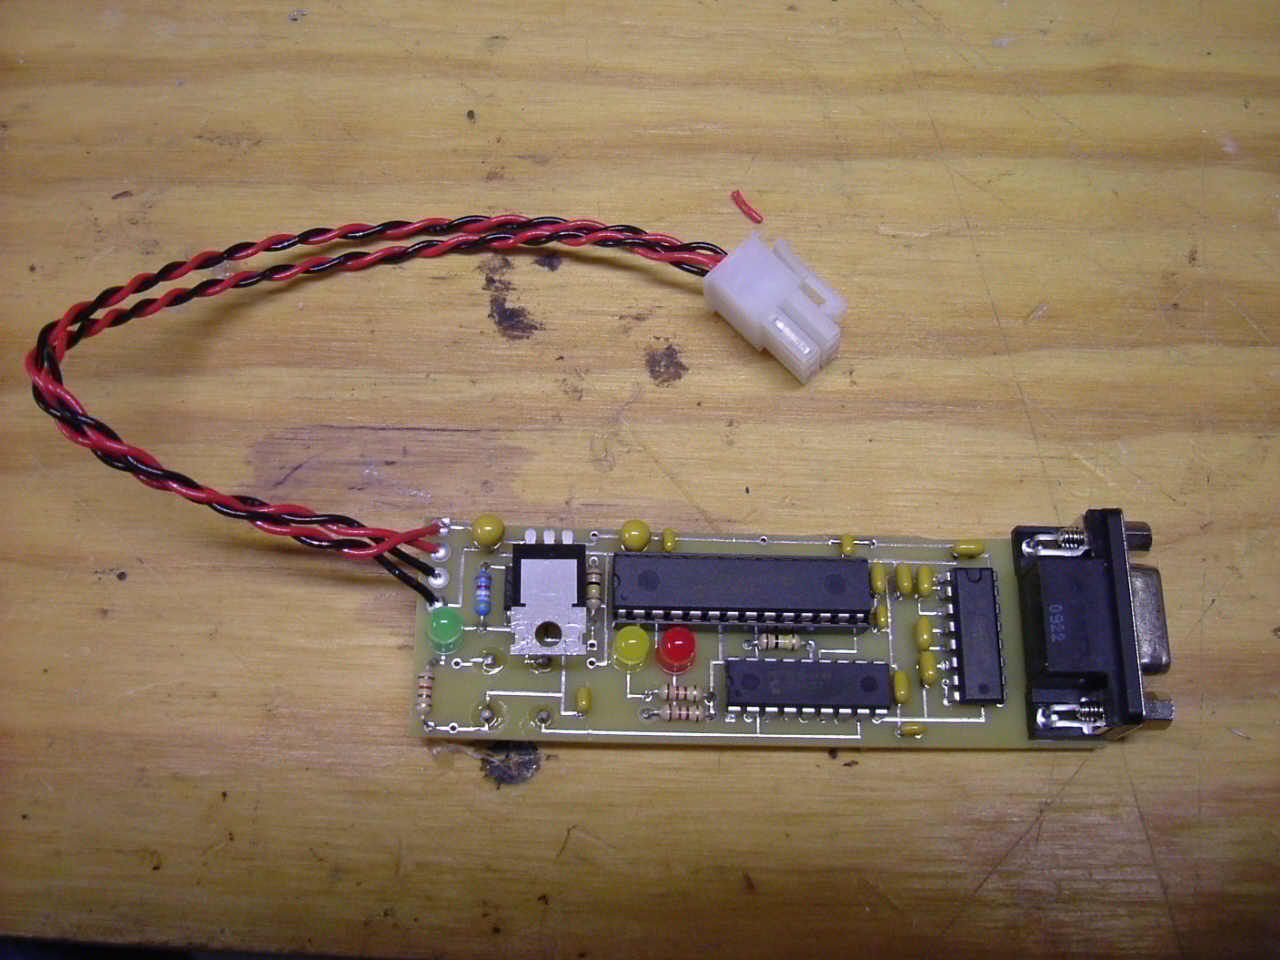 Assembled adapter